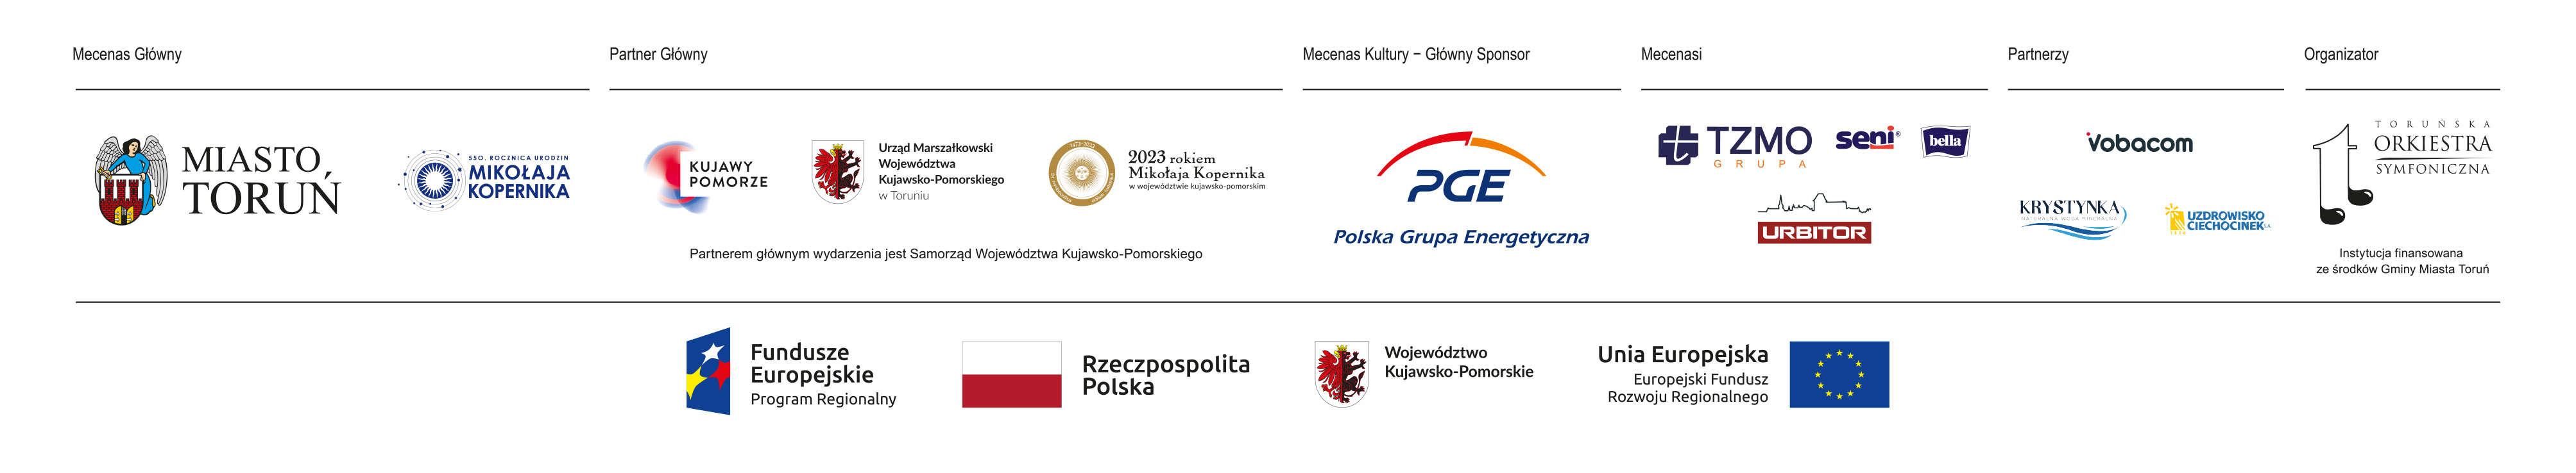 Logotypy mecenasów, sponsorów, partnerów 27. Międzynarodowego Festiwalu Nova Muzyka i Architektura / Toruń, kujawsko-pomorskie, 2023